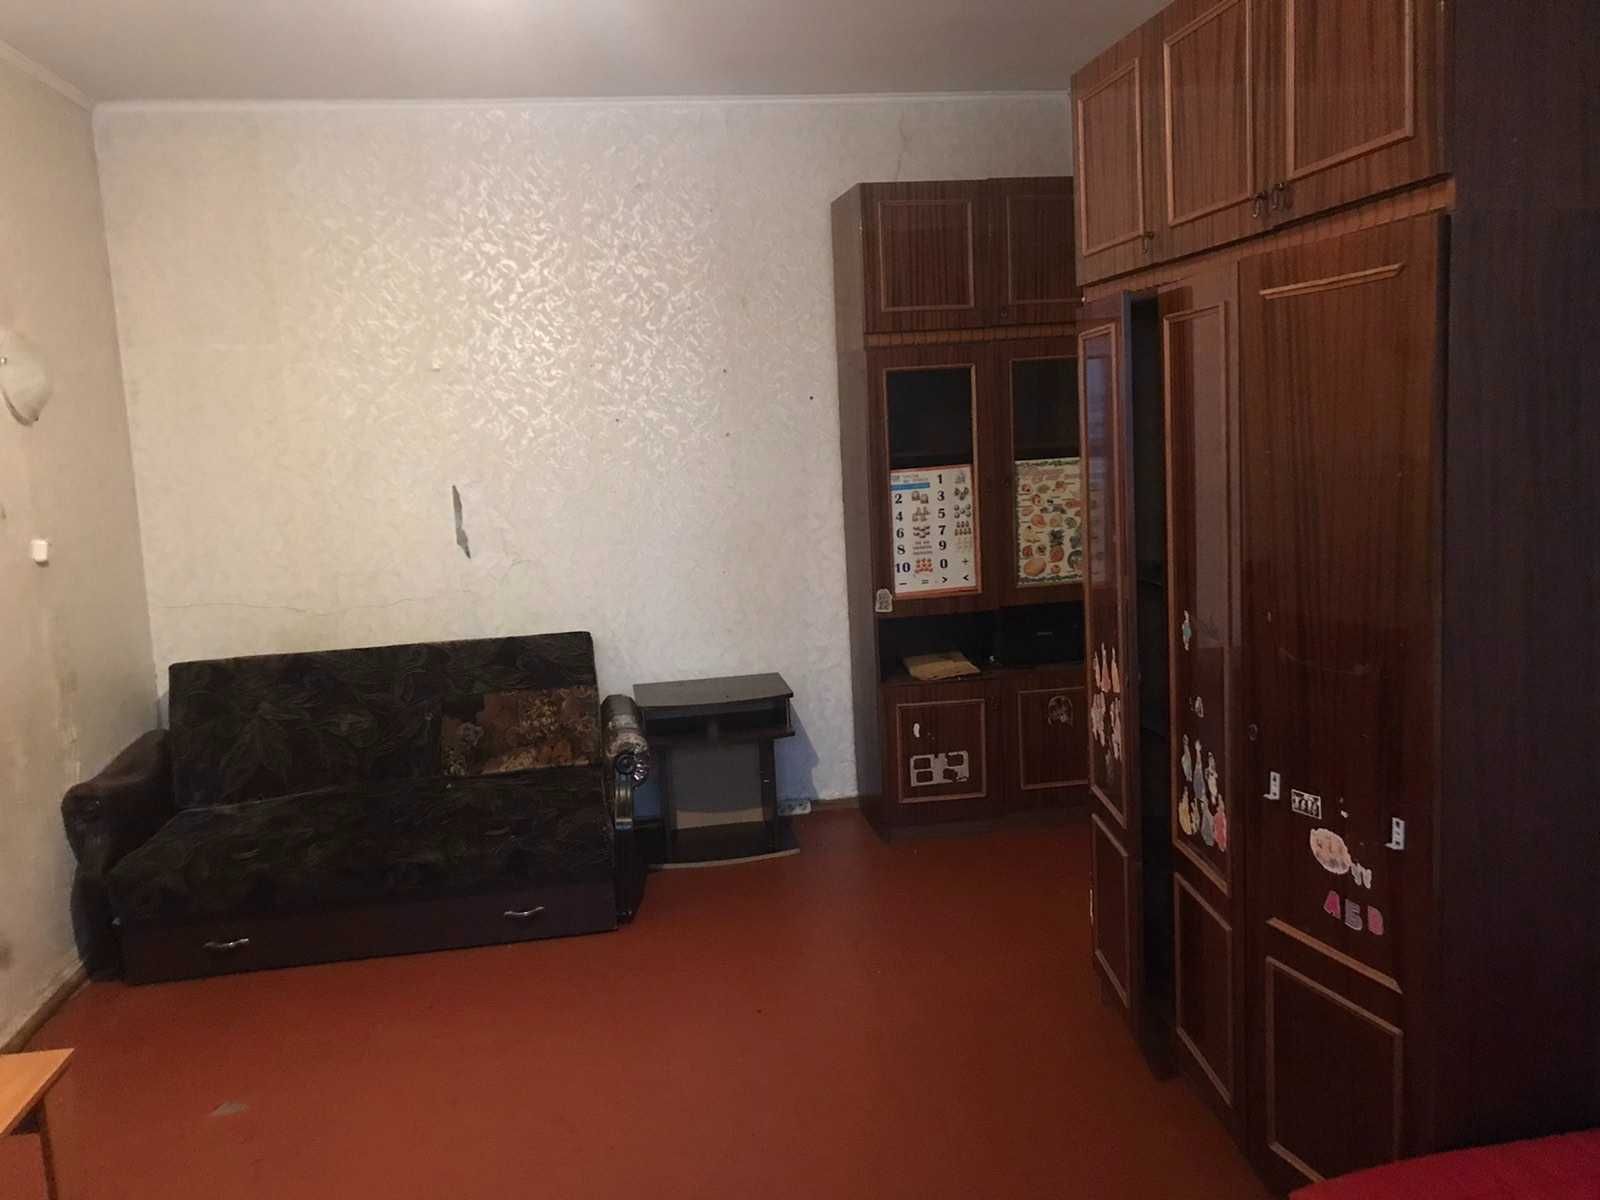 Аренда комнаты в 2ком квартире Борщаговка